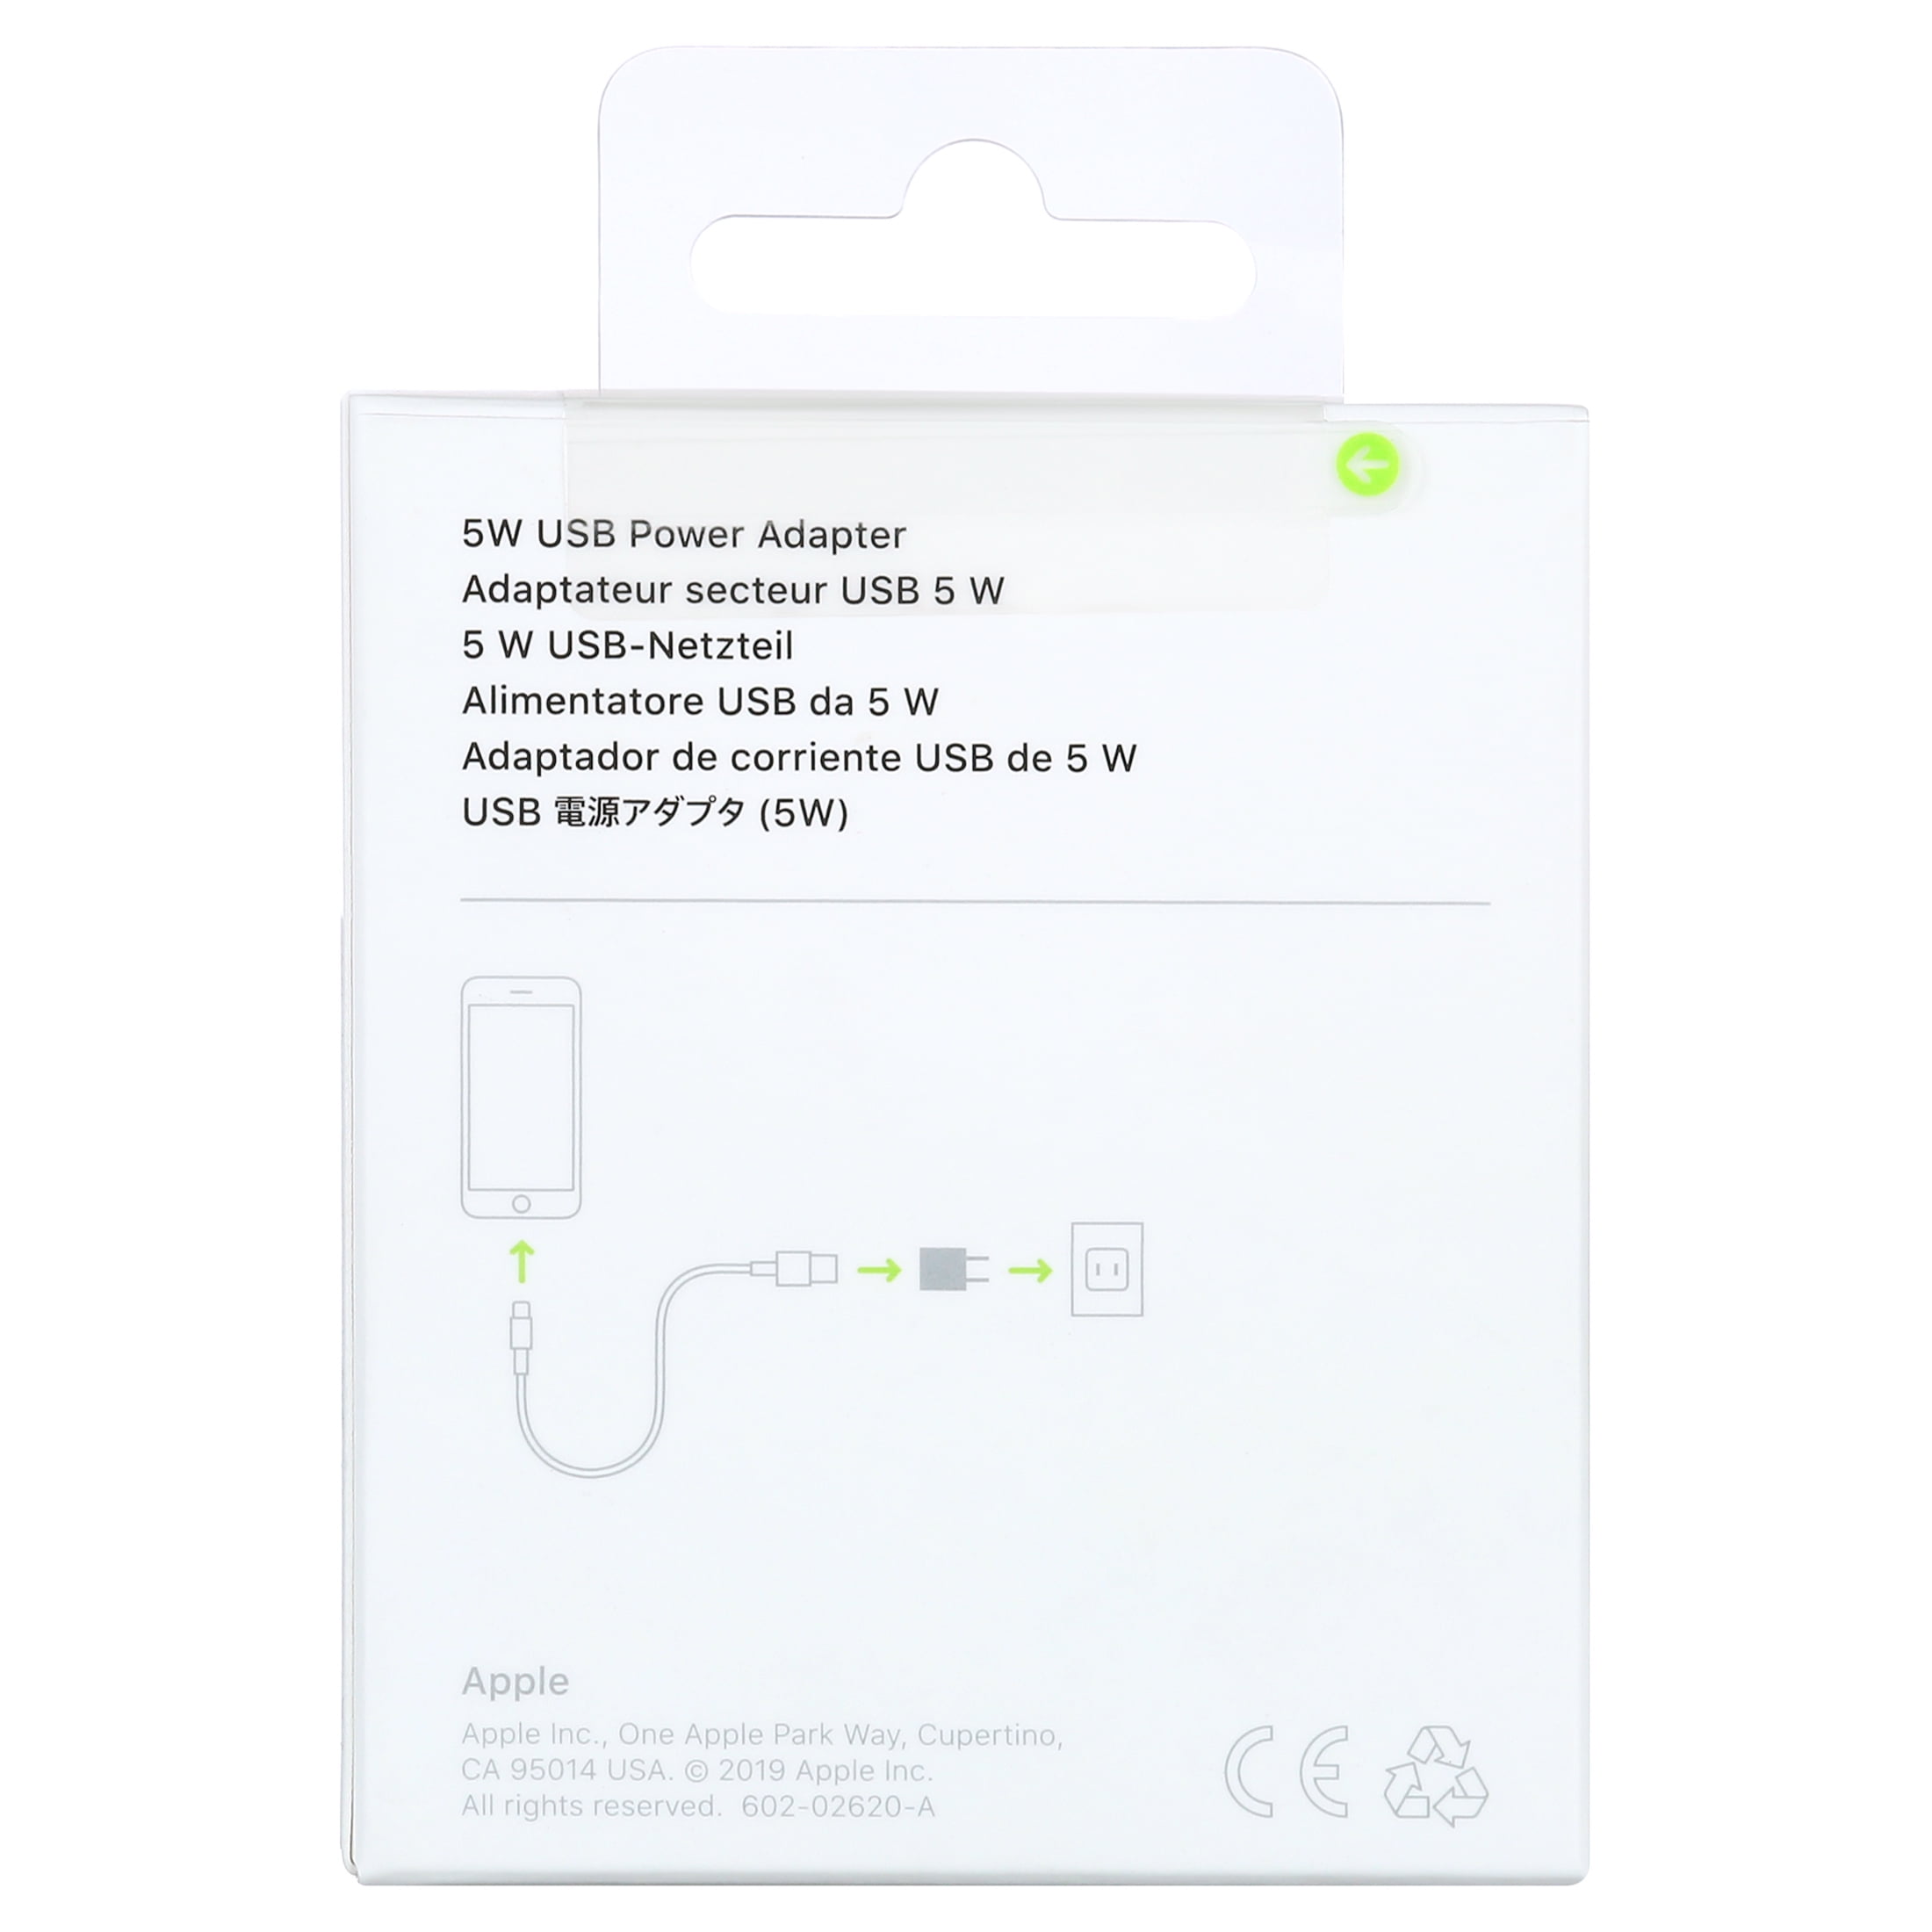 I mængde Banyan Spis aftensmad Apple USB Power Adapter - Walmart.com